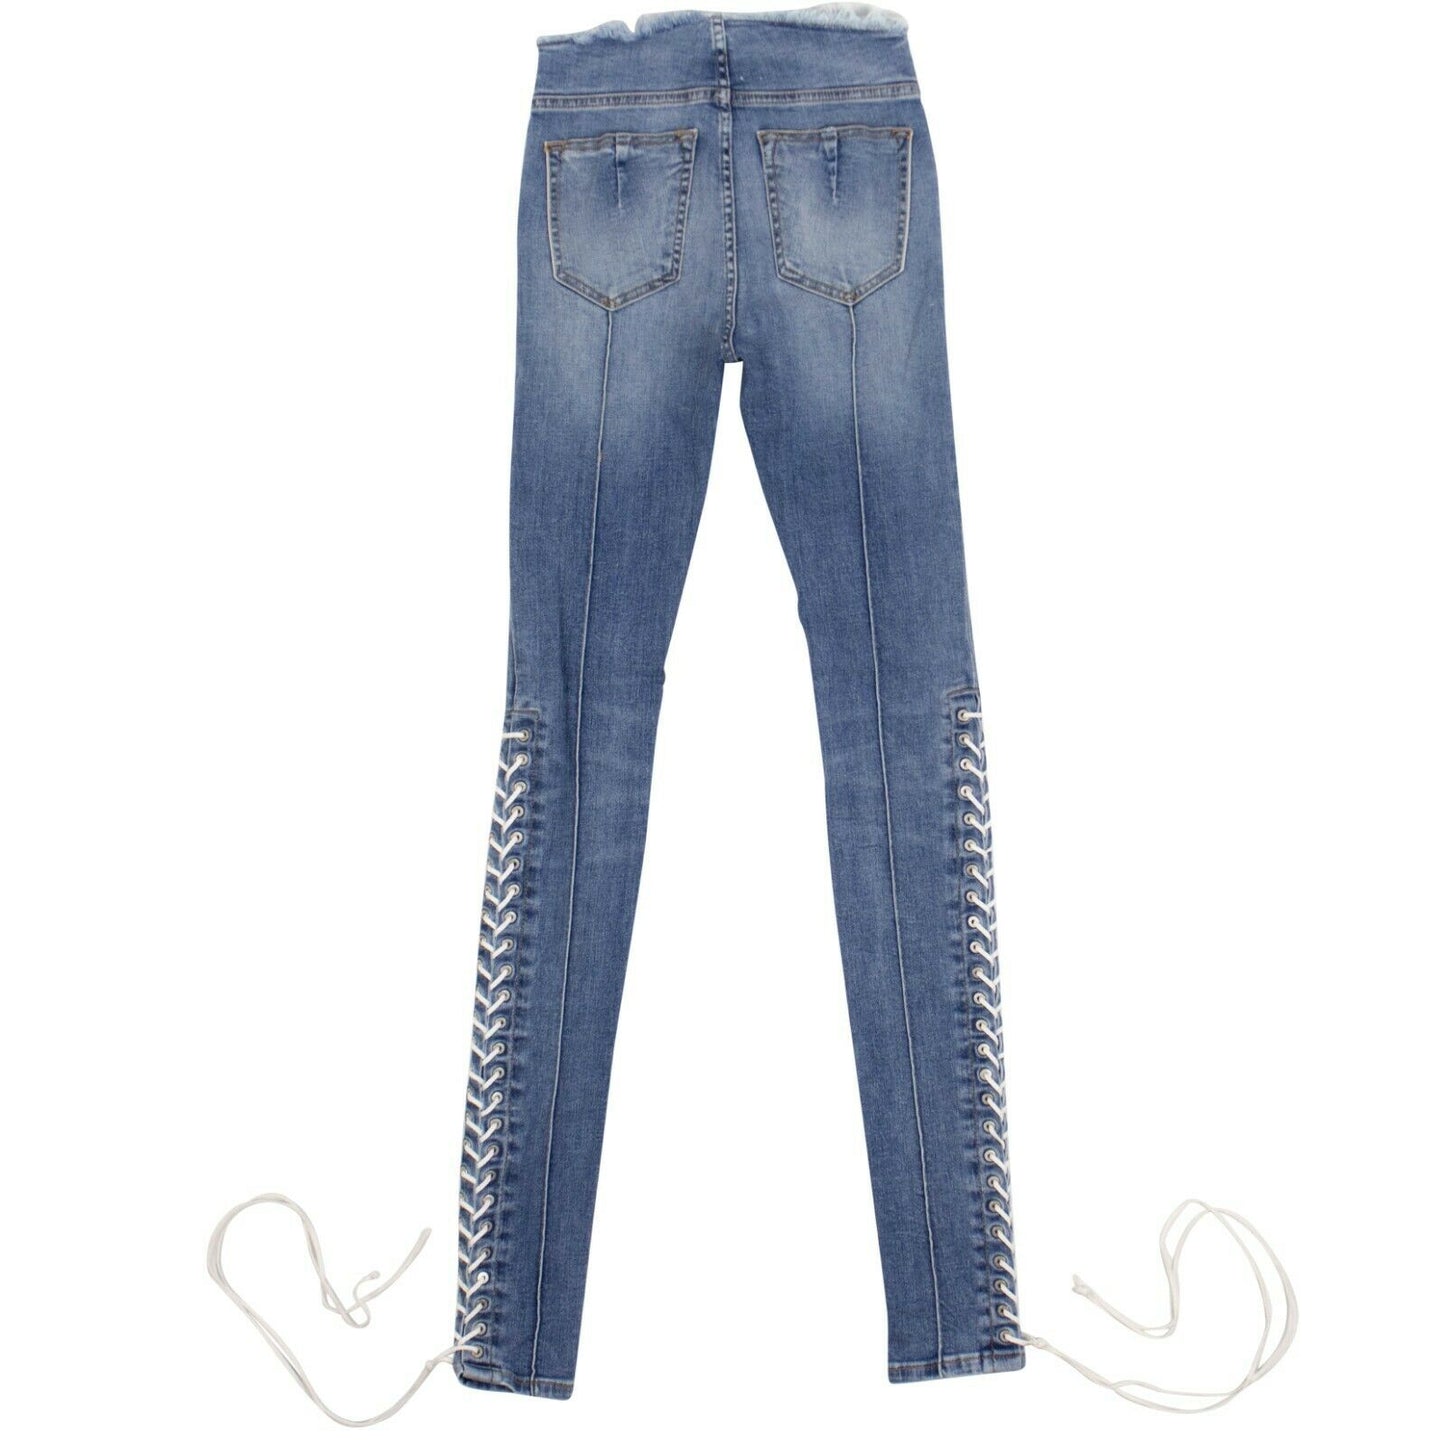 Unravel Project Denim Cotton Lace Up Skinny Jeans Pants - Blue